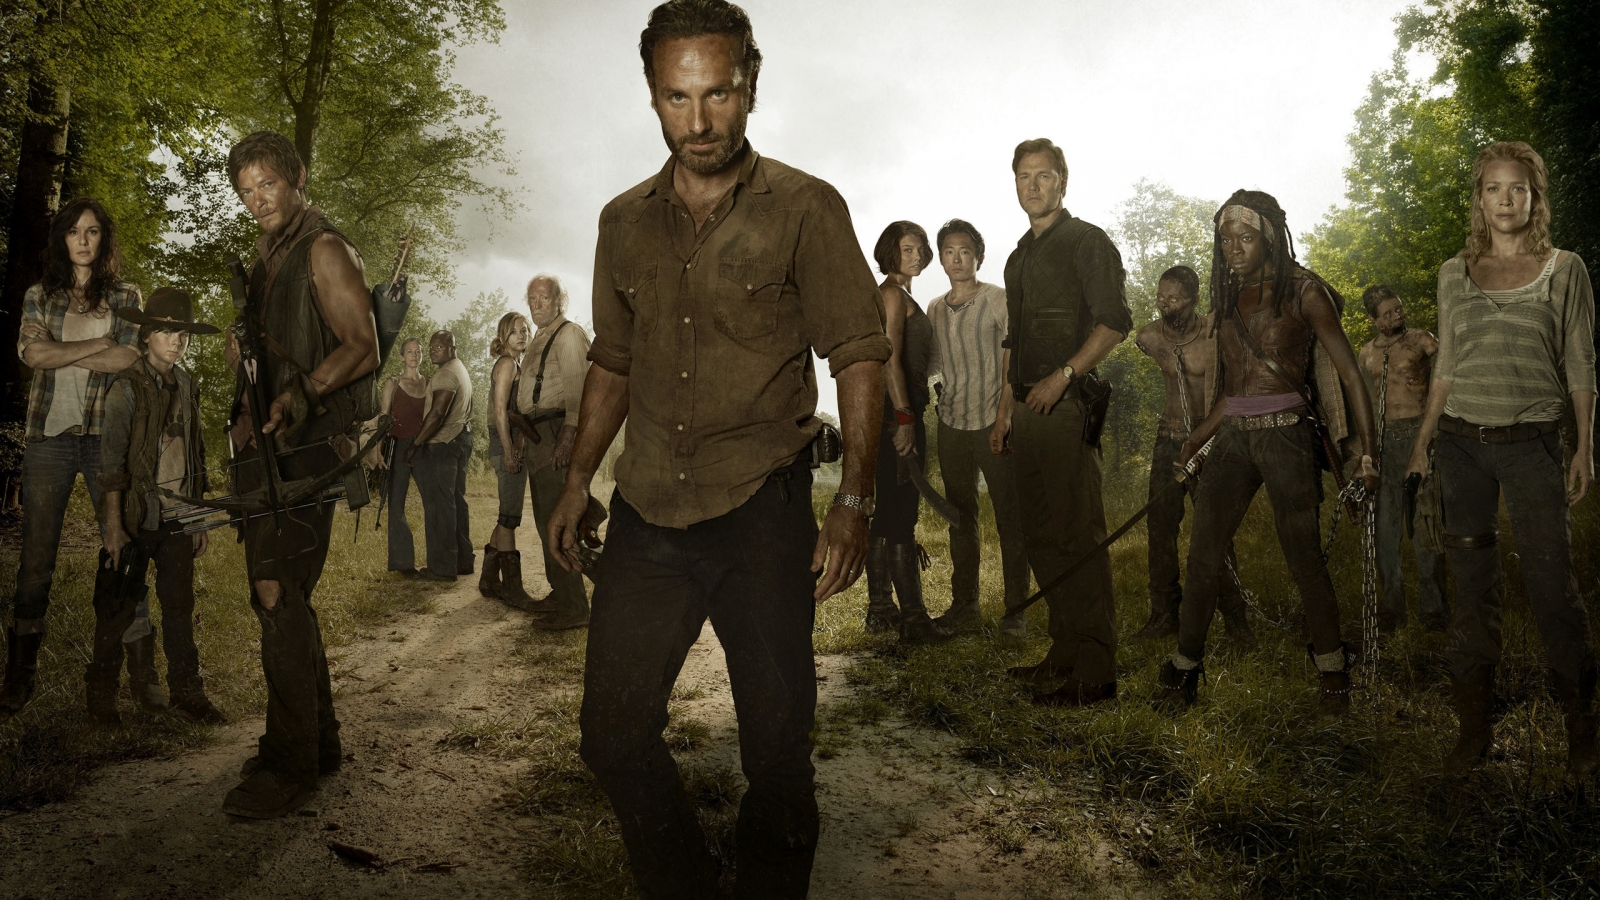 The Walking Dead Full Cast for 1600 x 900 HDTV resolution